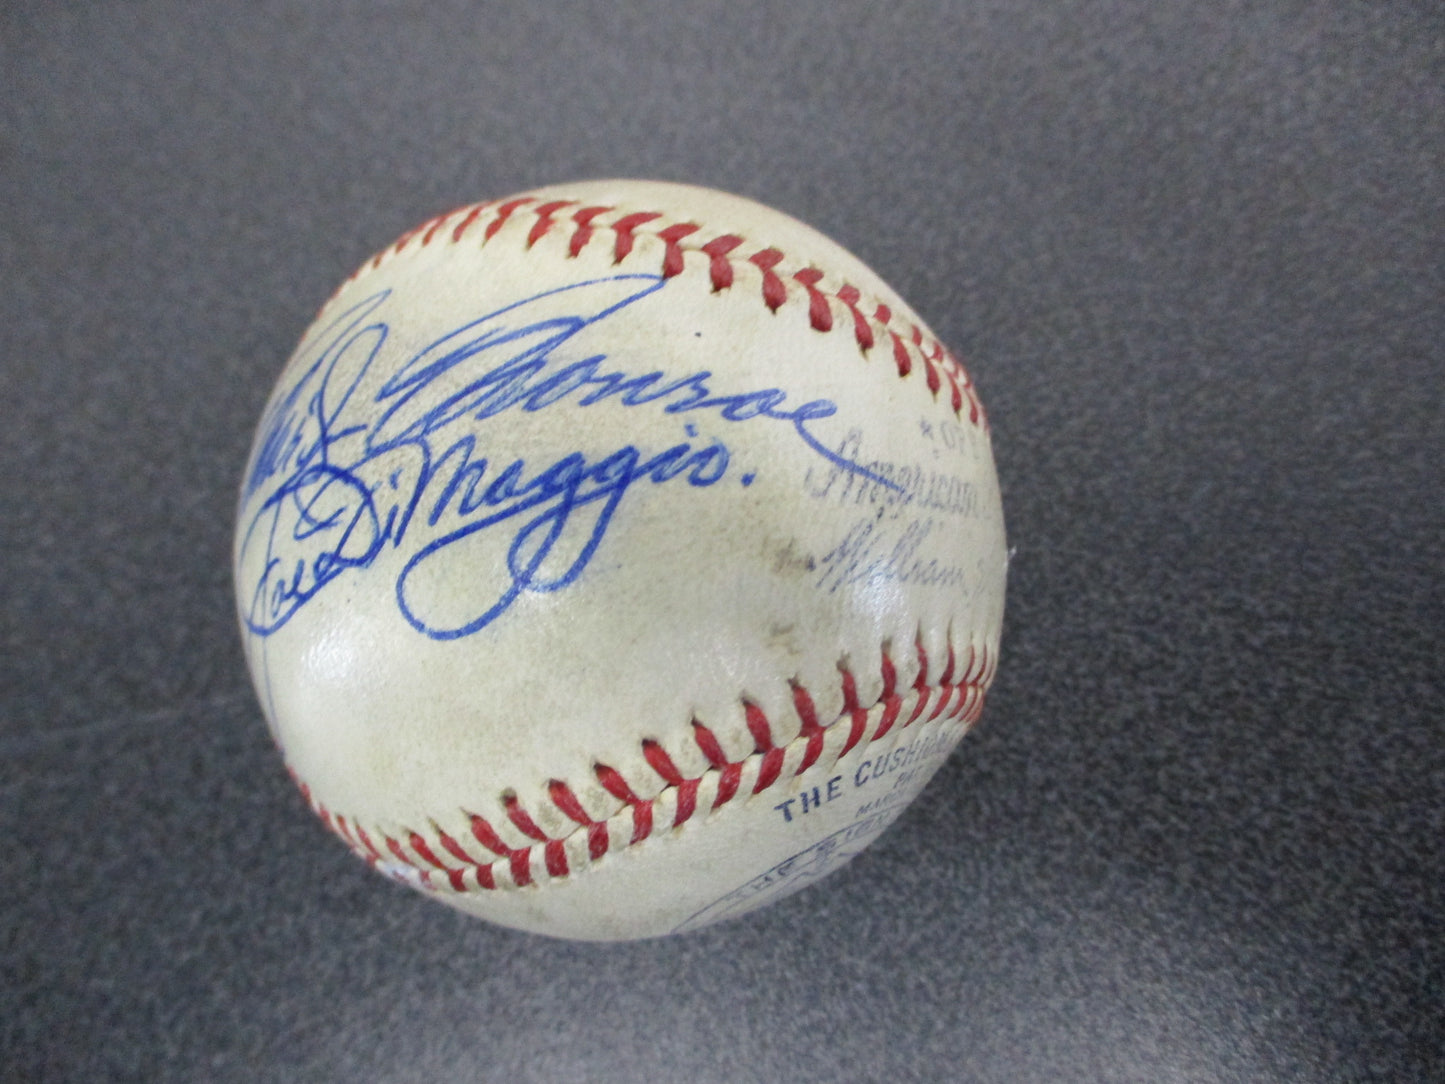 Marilyn Monroe / Joe DiMaggio Signed Official American League Baseball